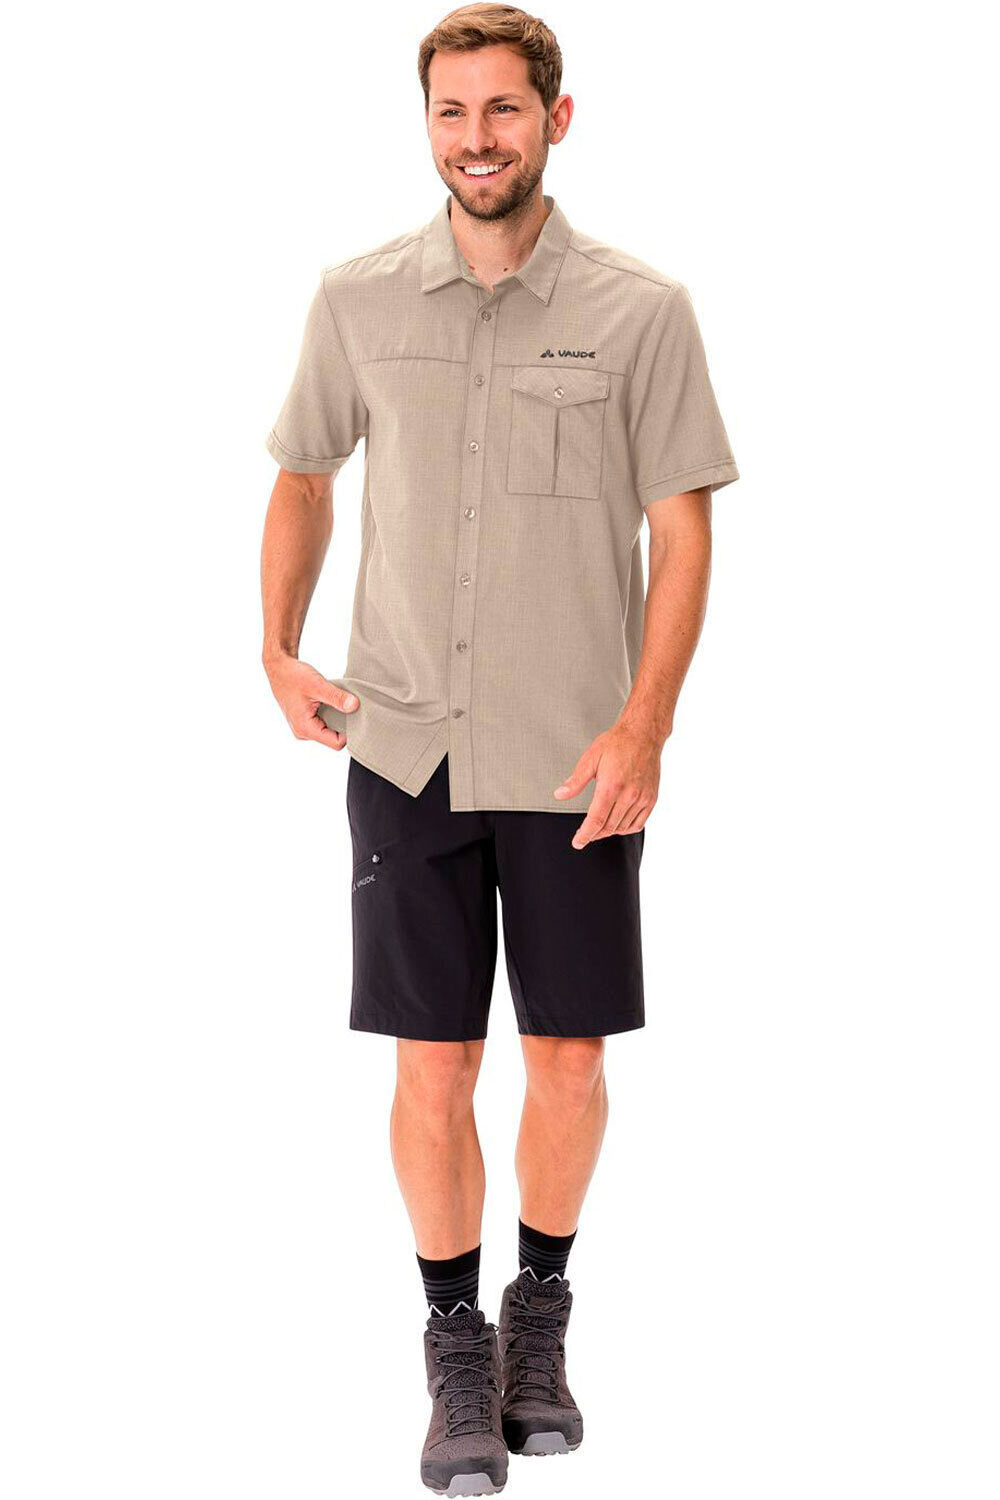 Vaude camisa montaña manga corta hombre Men's Rosemoor Shirt II 04